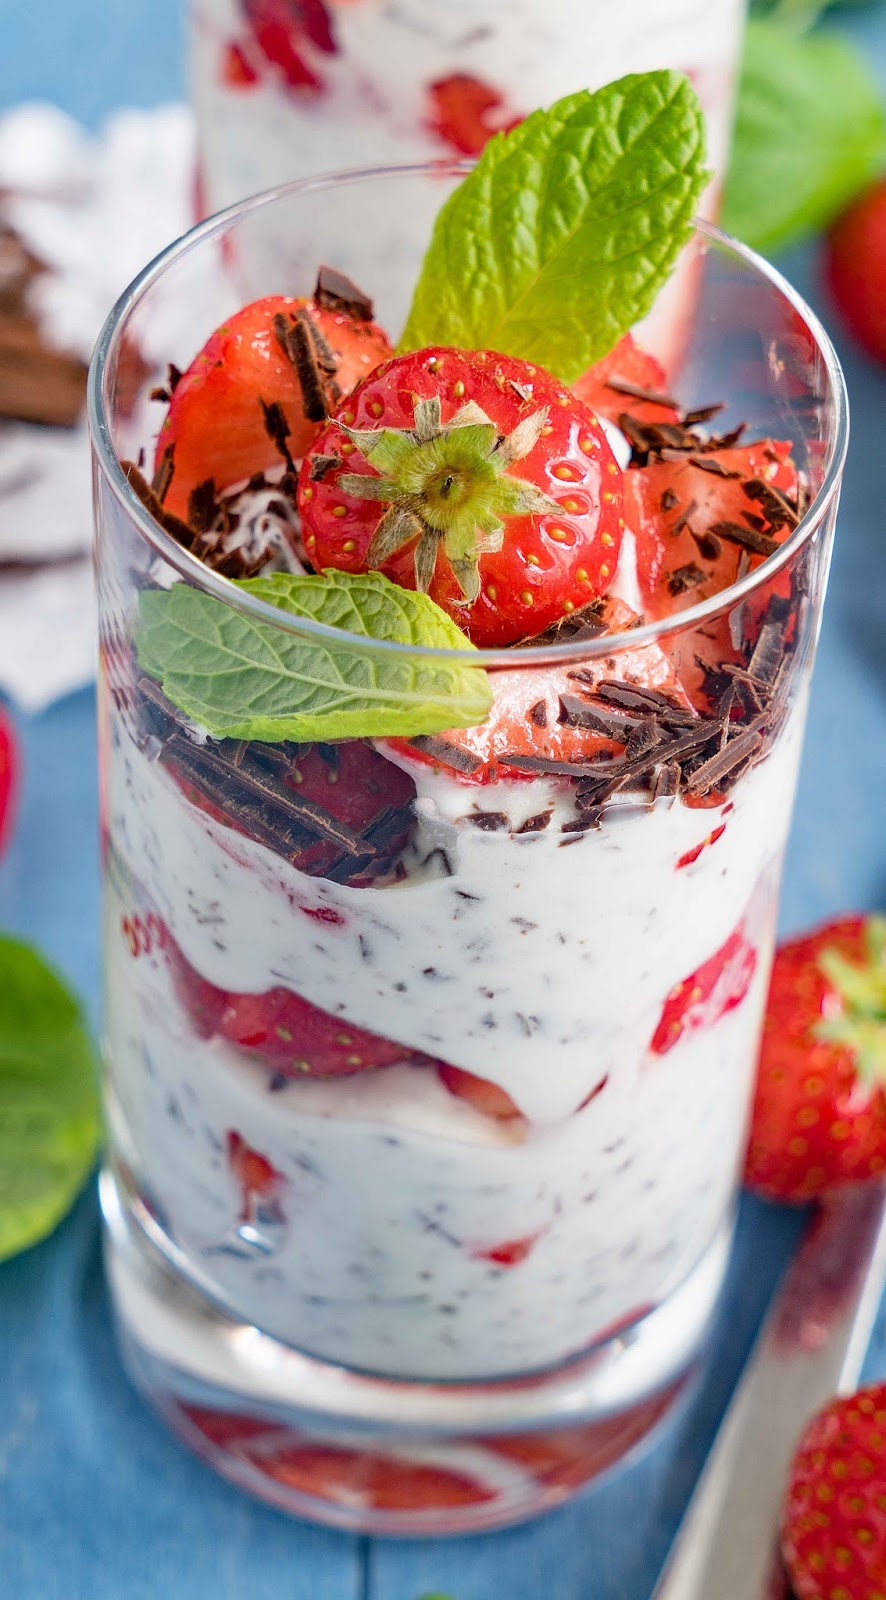 stuttgartcooking: Joghurt-Frischkäse-Stracciatella mit Erdbeeren und Minze